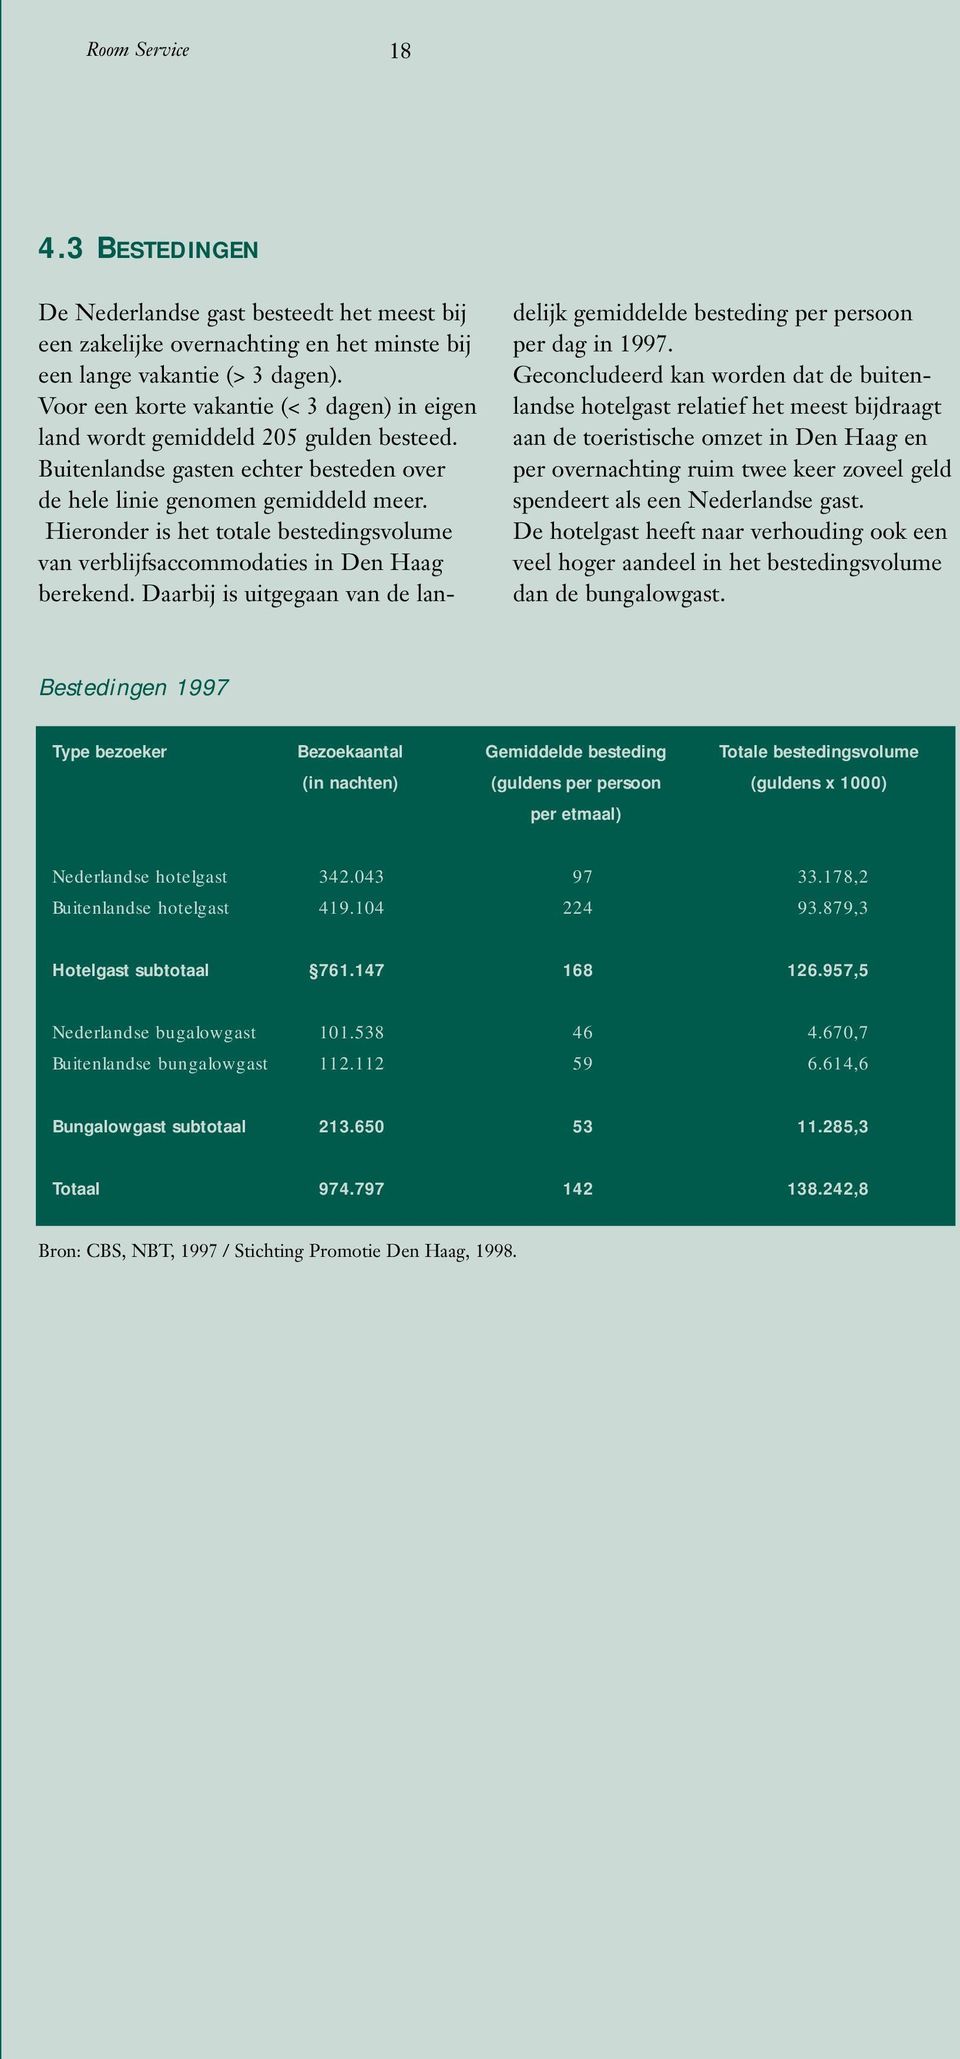 Hieronder is het totale bestedingsvolume van verblijfsaccommodaties in Den Haag berekend. Daarbij is uitgegaan van de landelijk gemiddelde besteding per persoon per dag in 1997.